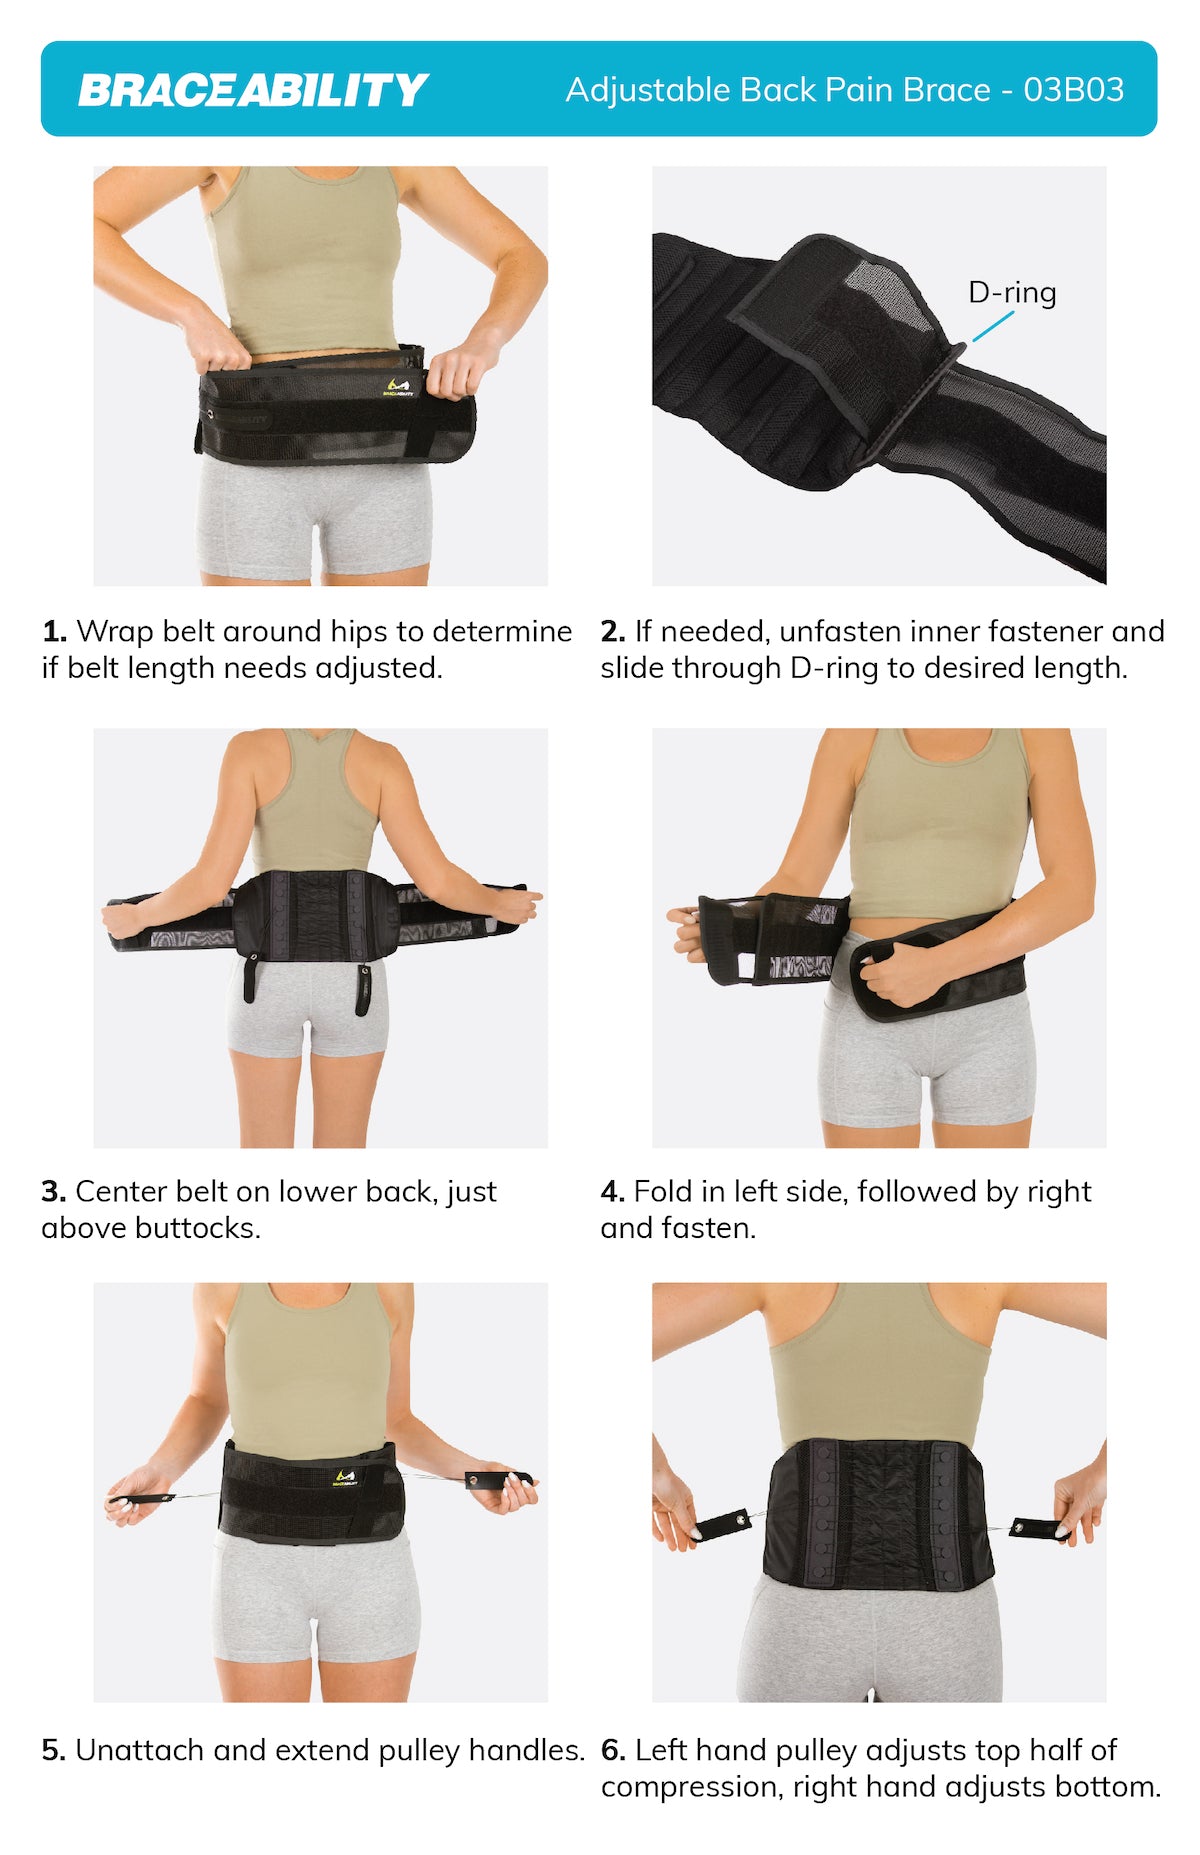 How to Wear a Back Brace